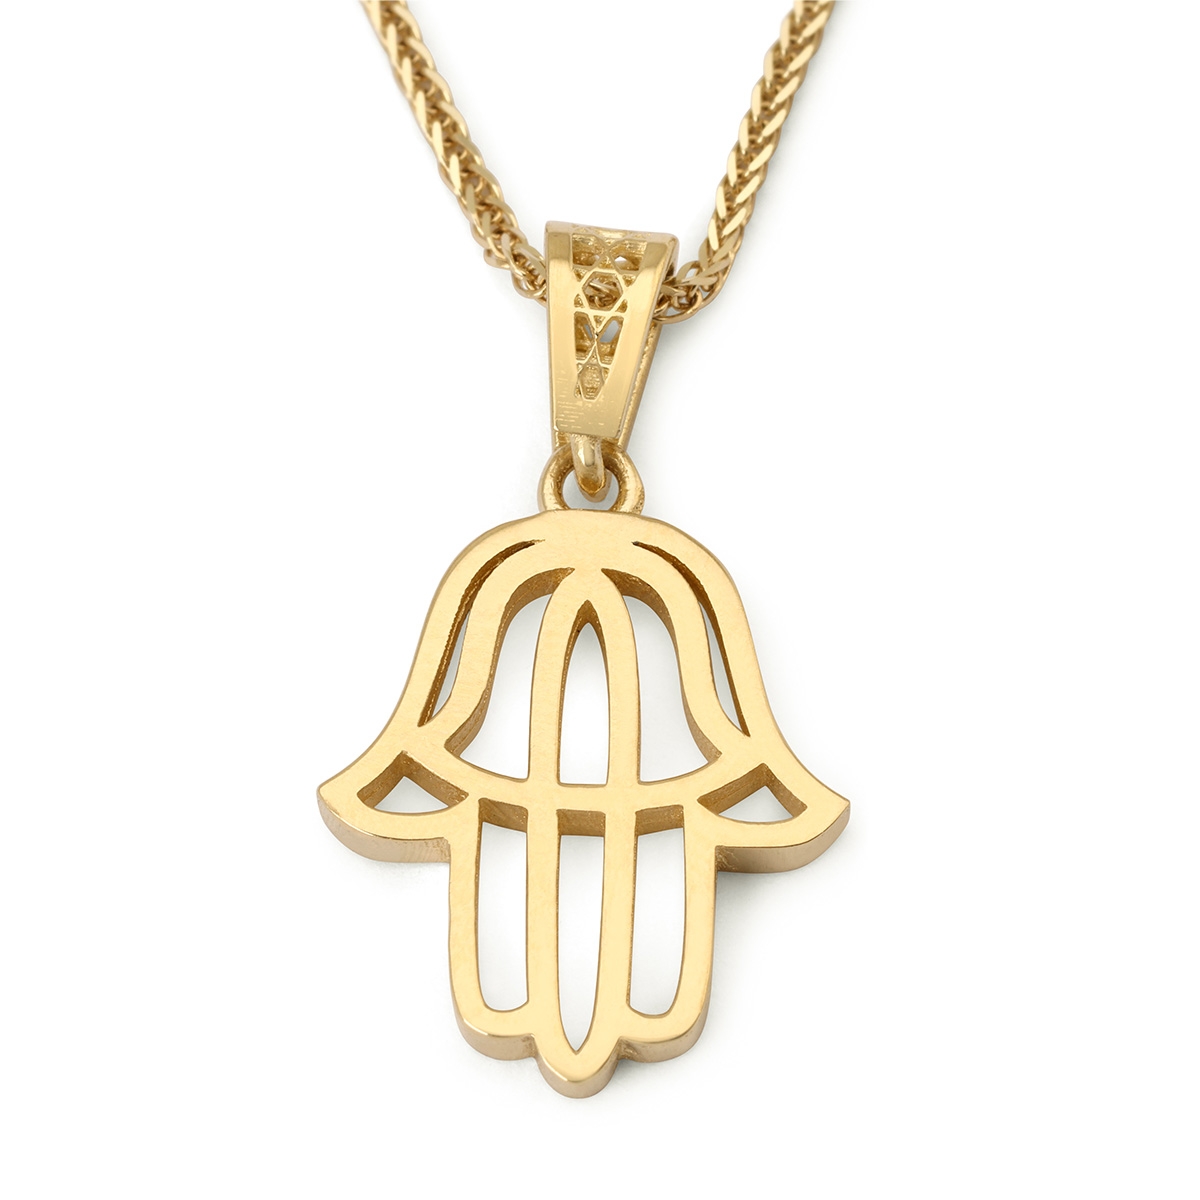 Stylish 14K Gold Hamsa Pendant Necklace - 1